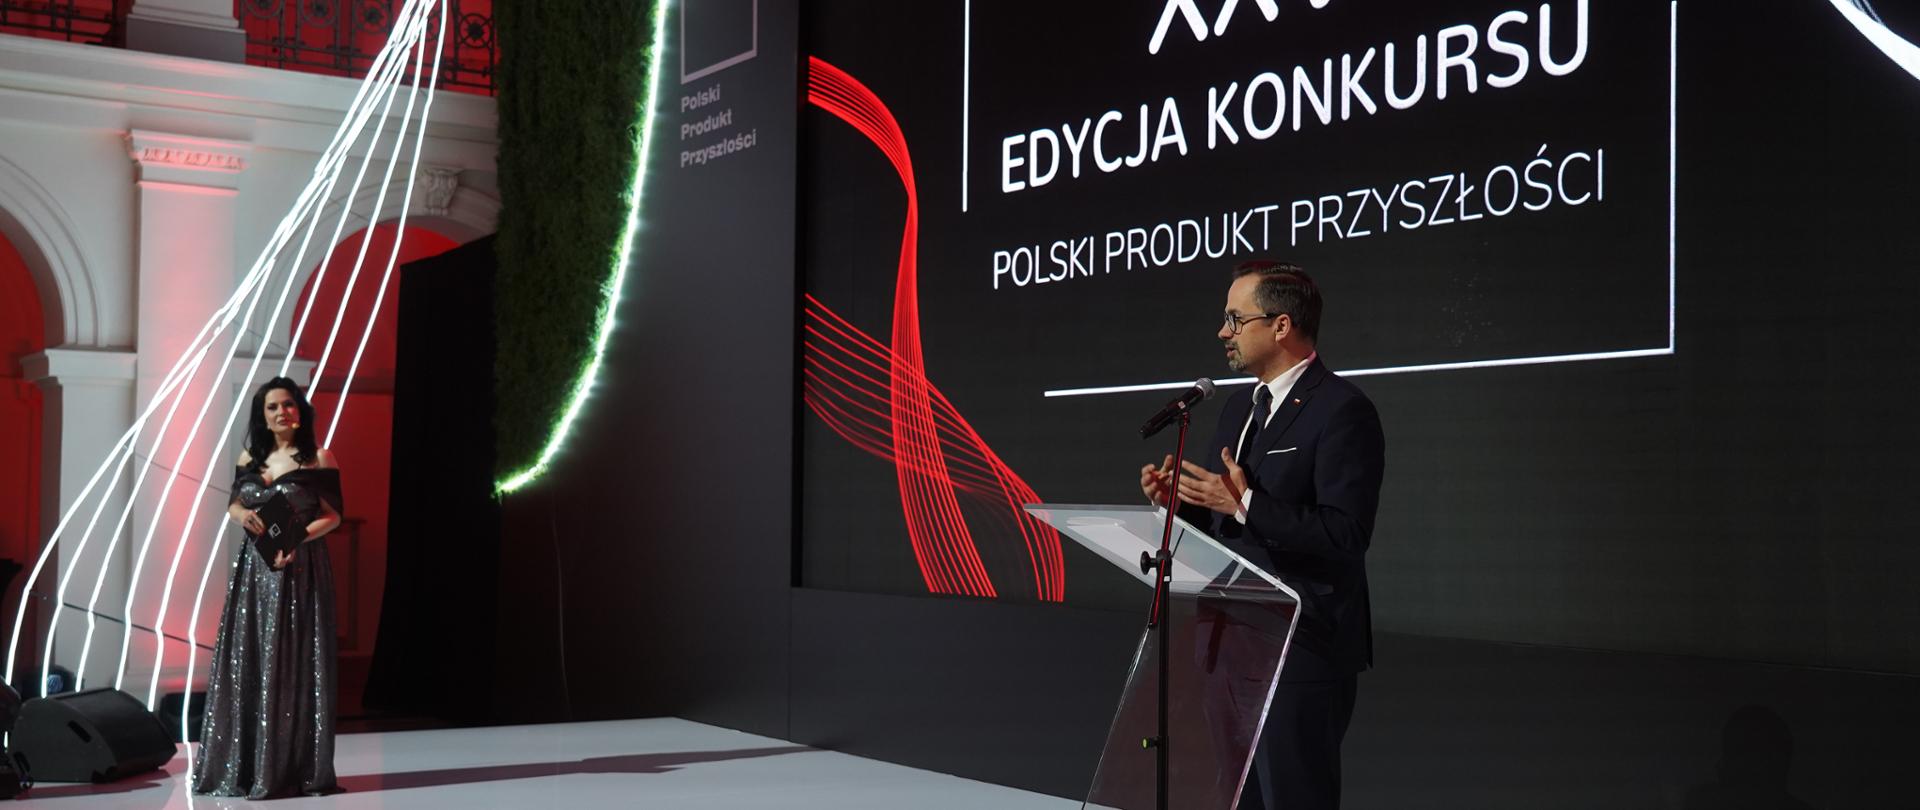 Wiceminister Marcin Horała stoi na scenie z prawej strony i mówi do mikrofonu.